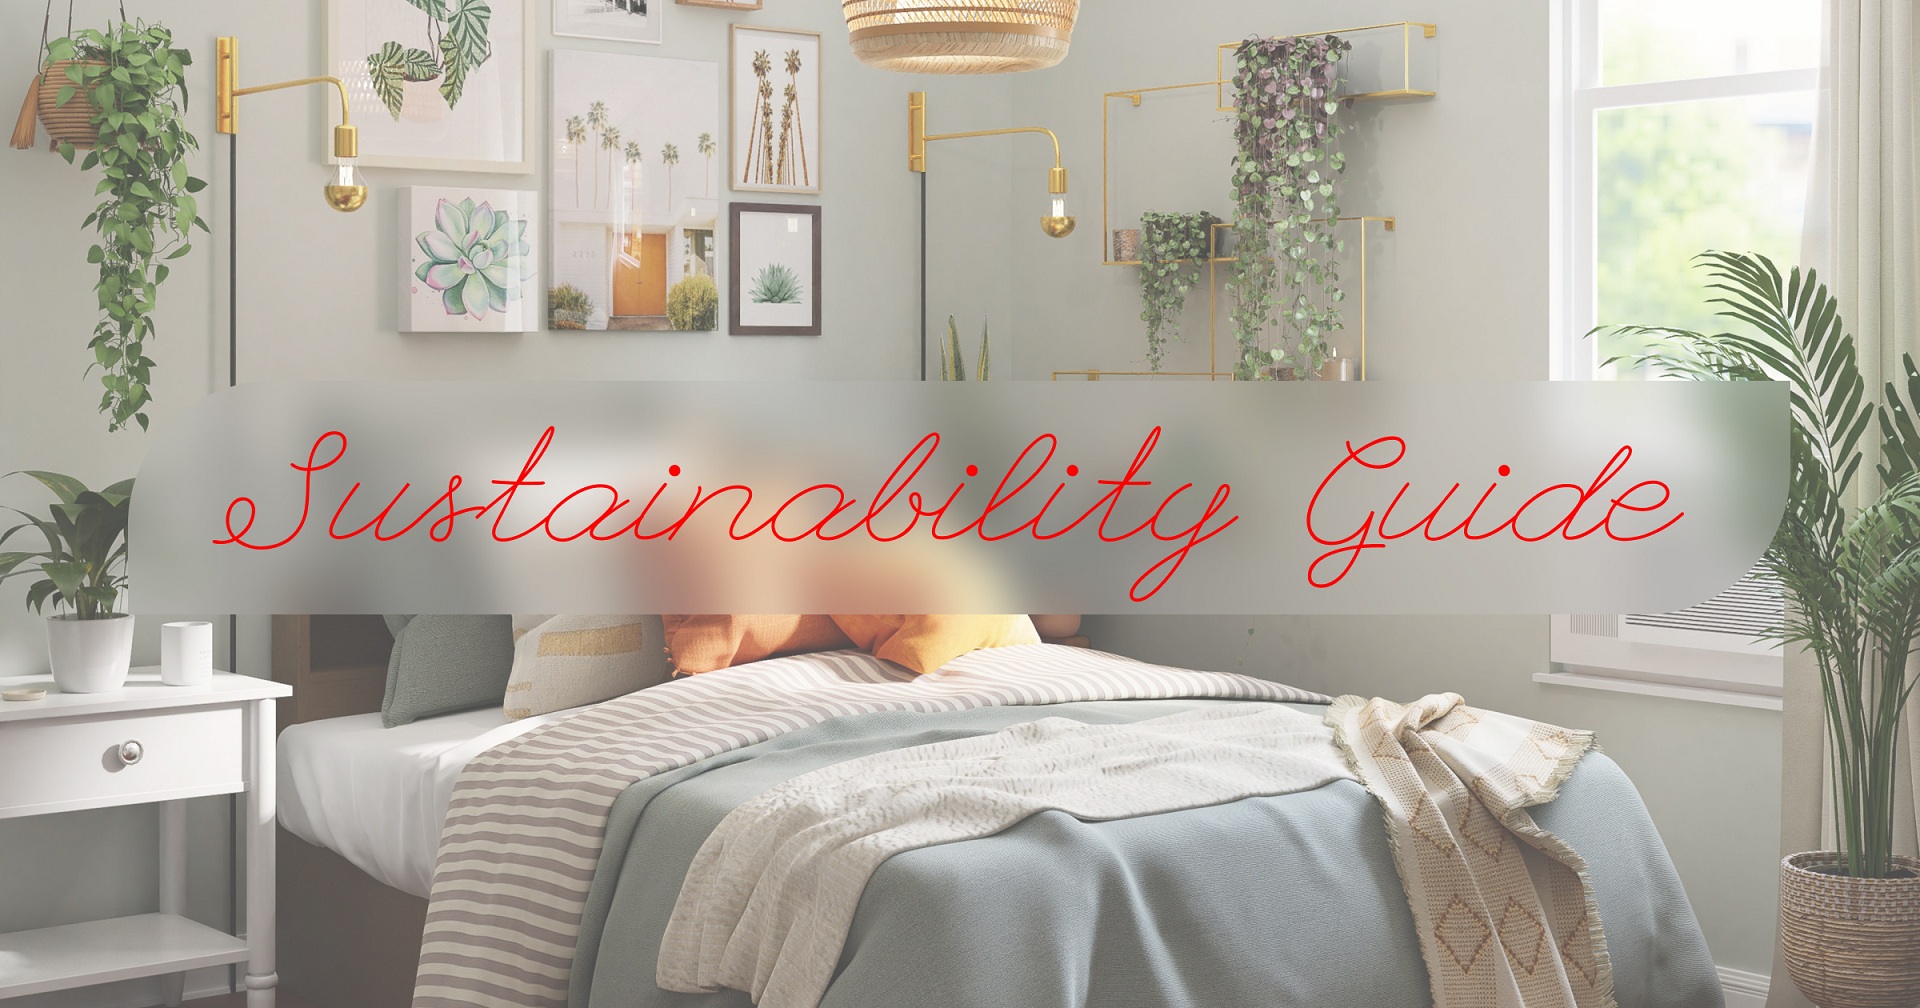 Sustainability Guide: екологічний будинок або 9 способів, як переосмислити свій інтер'єр -Фото 1